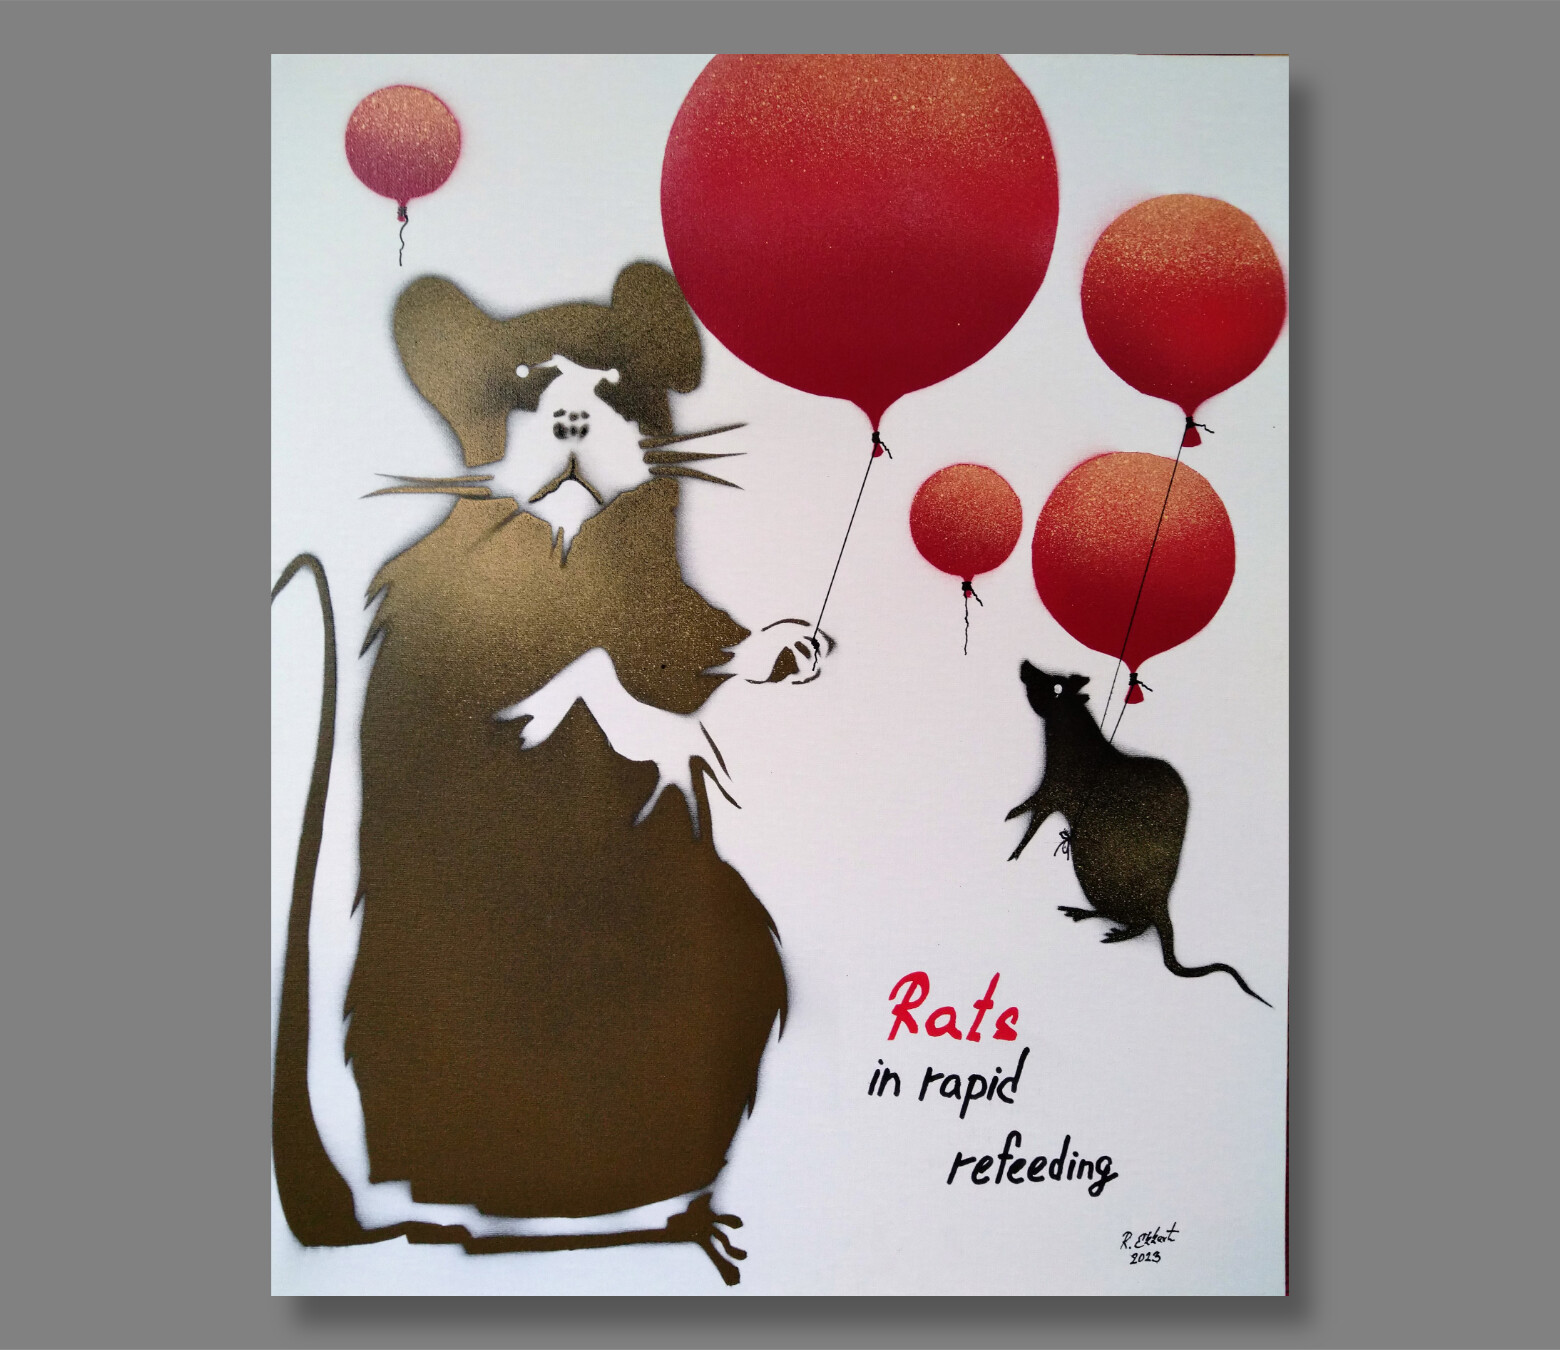 Atelier Hlavina: Rastislav Ekkert – Rats in rapid refeeding